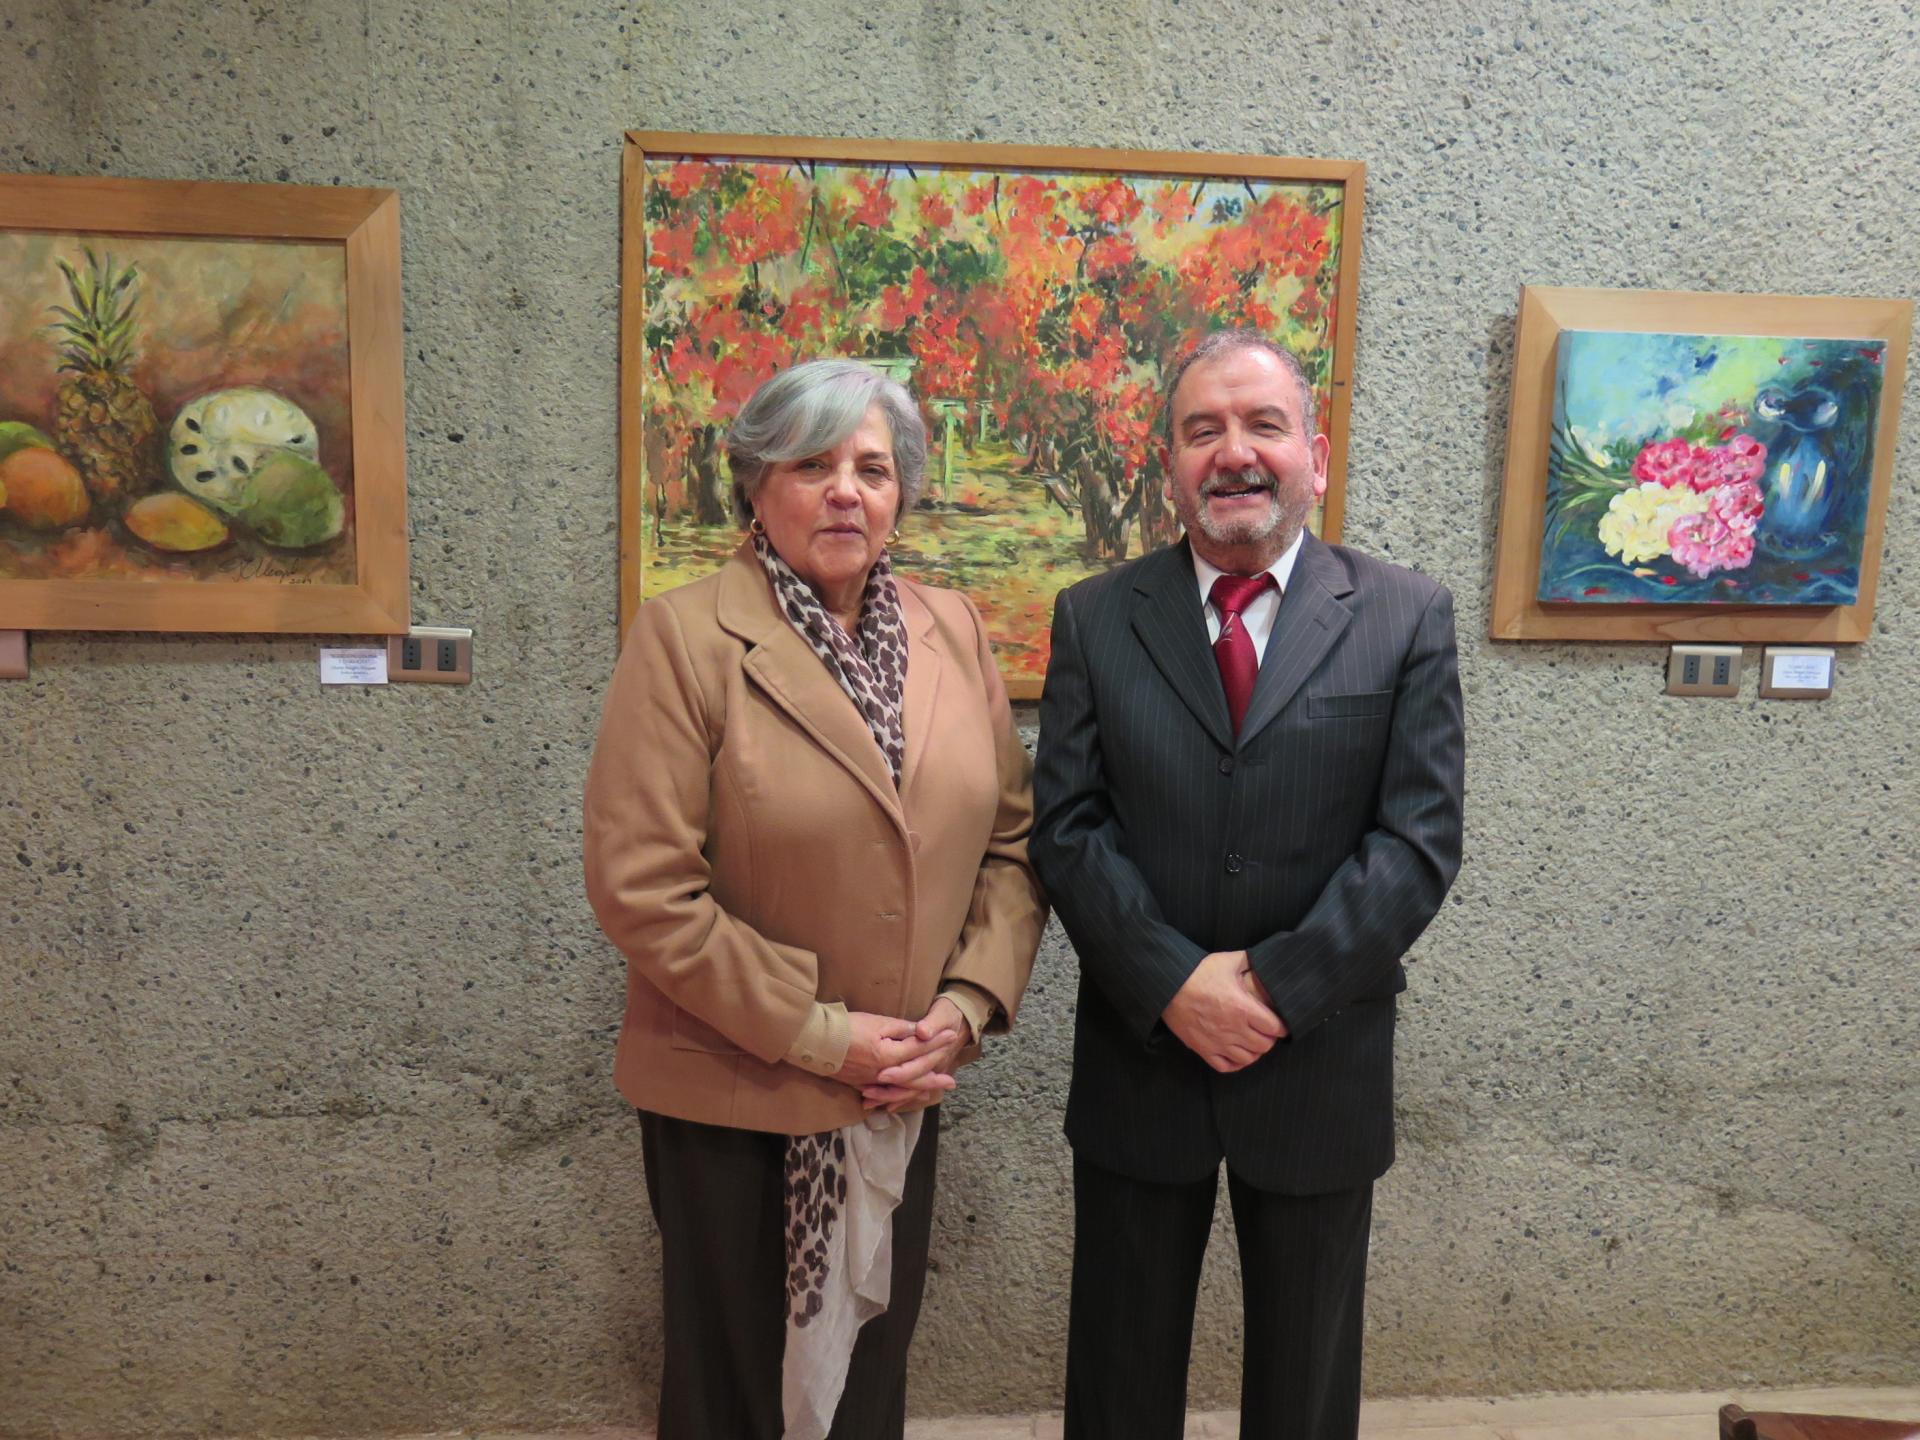 La expositora Gloria Alegría junto al Director del museo, Patricio Acevedo.